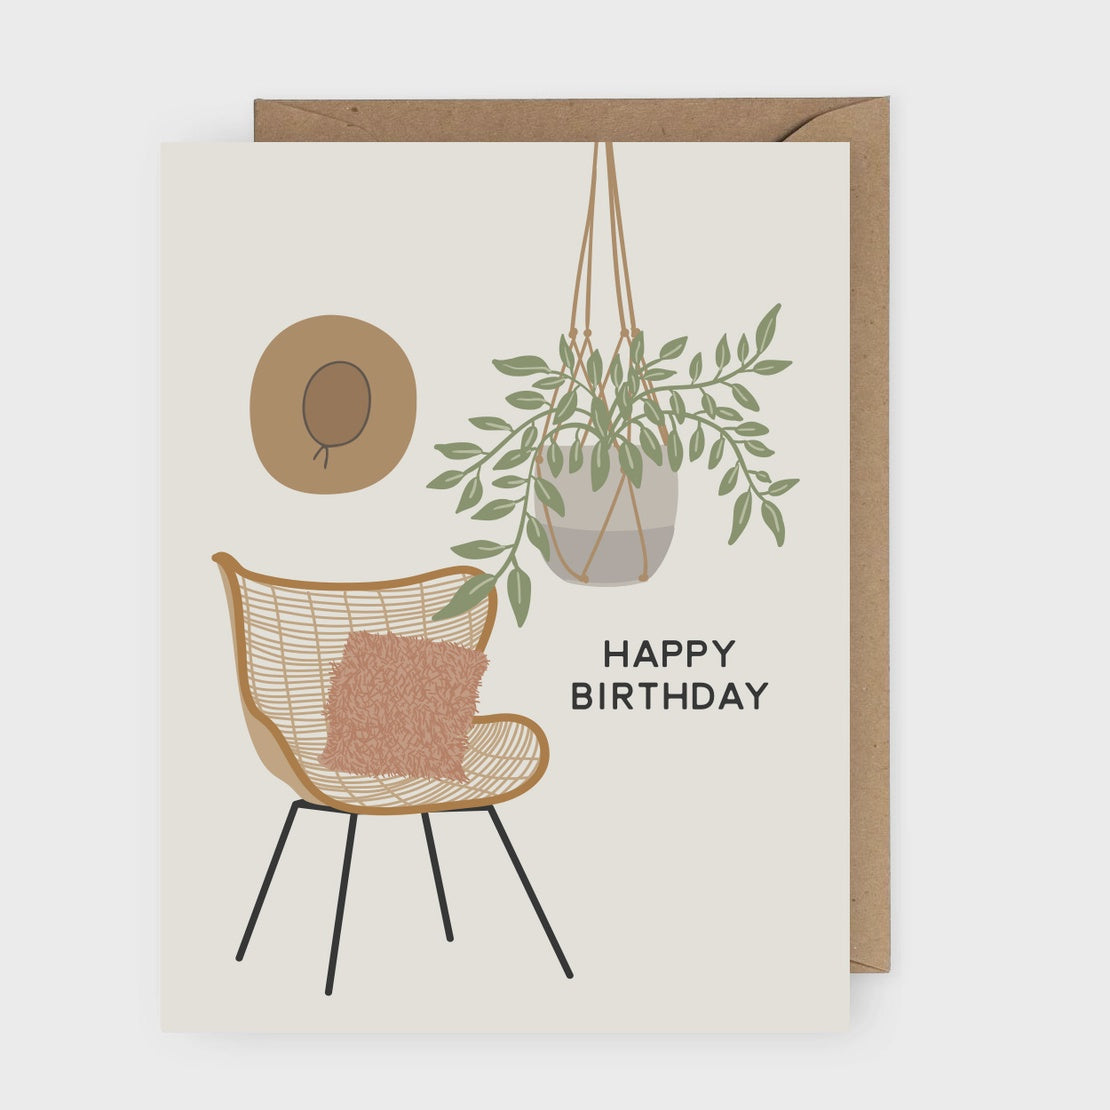 The Boho Happy Birthday Card